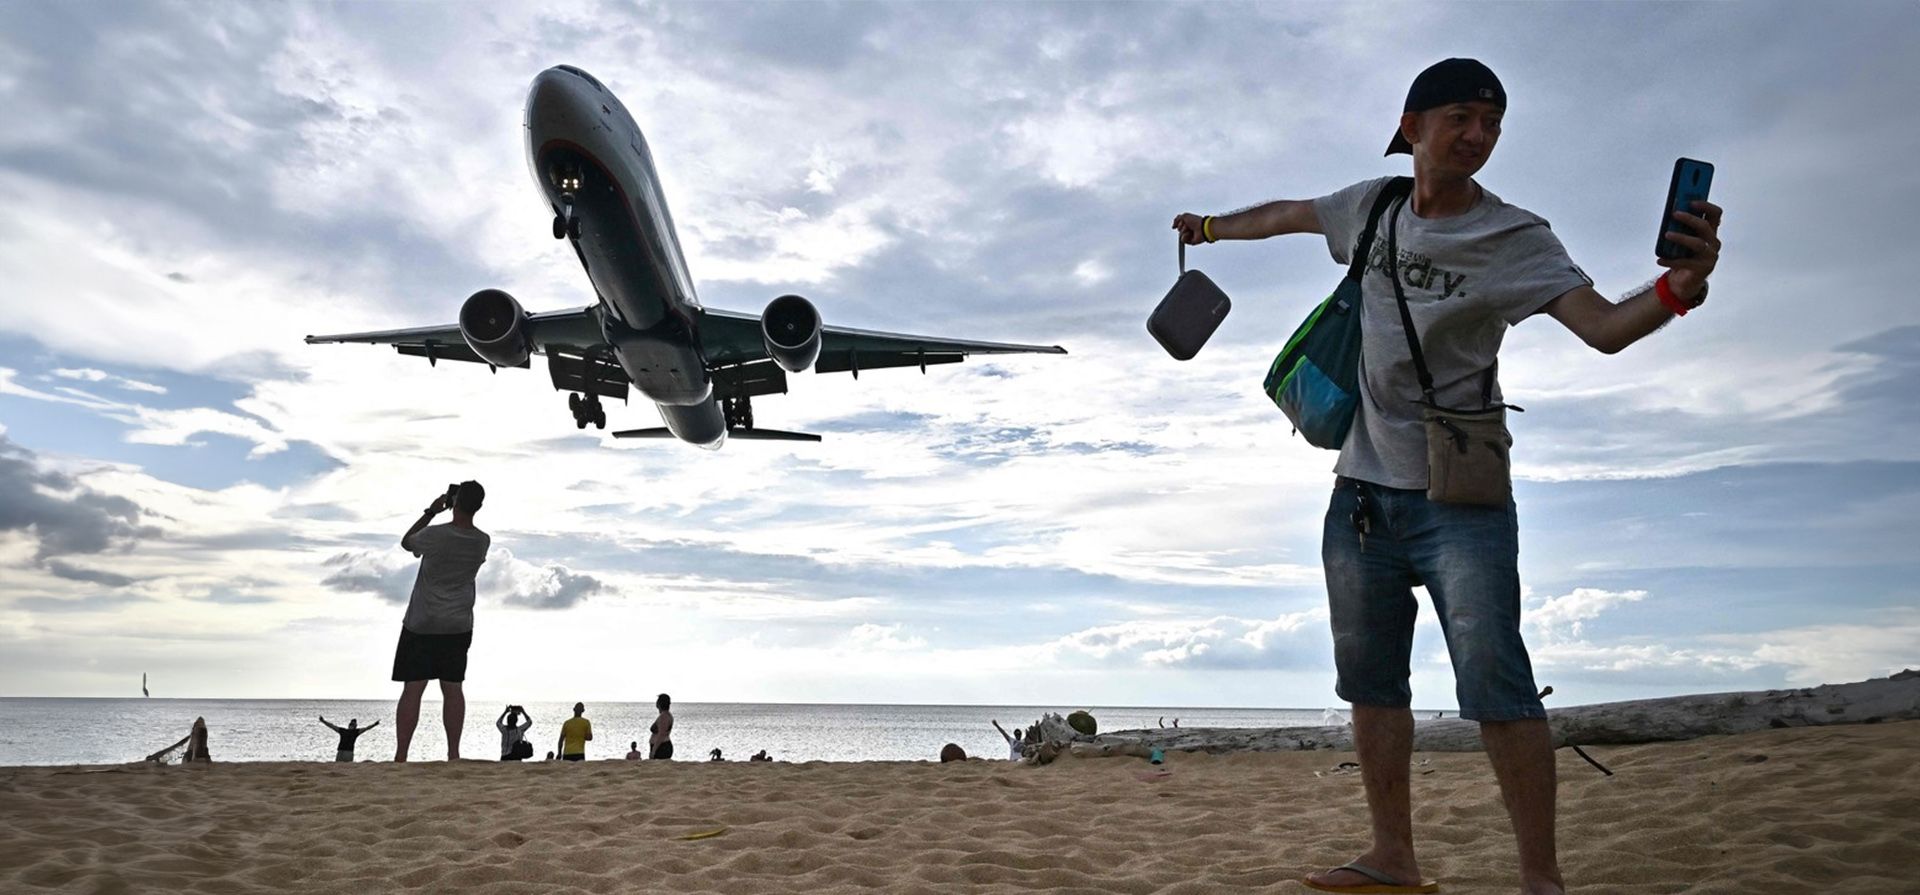 Un turista se toma una selfie en la playa de Mai Khao mientras un avión aterriza en el Aeropuerto Internacional de la isla de Phuket, Tailandia. Camboya, Tailandia y Vietnam están construyendo nuevos aeropuertos y terminales, y el próximo año se lanzará una nueva aerolínea. Foto de Lillian SUWANRUMPHA / AFP